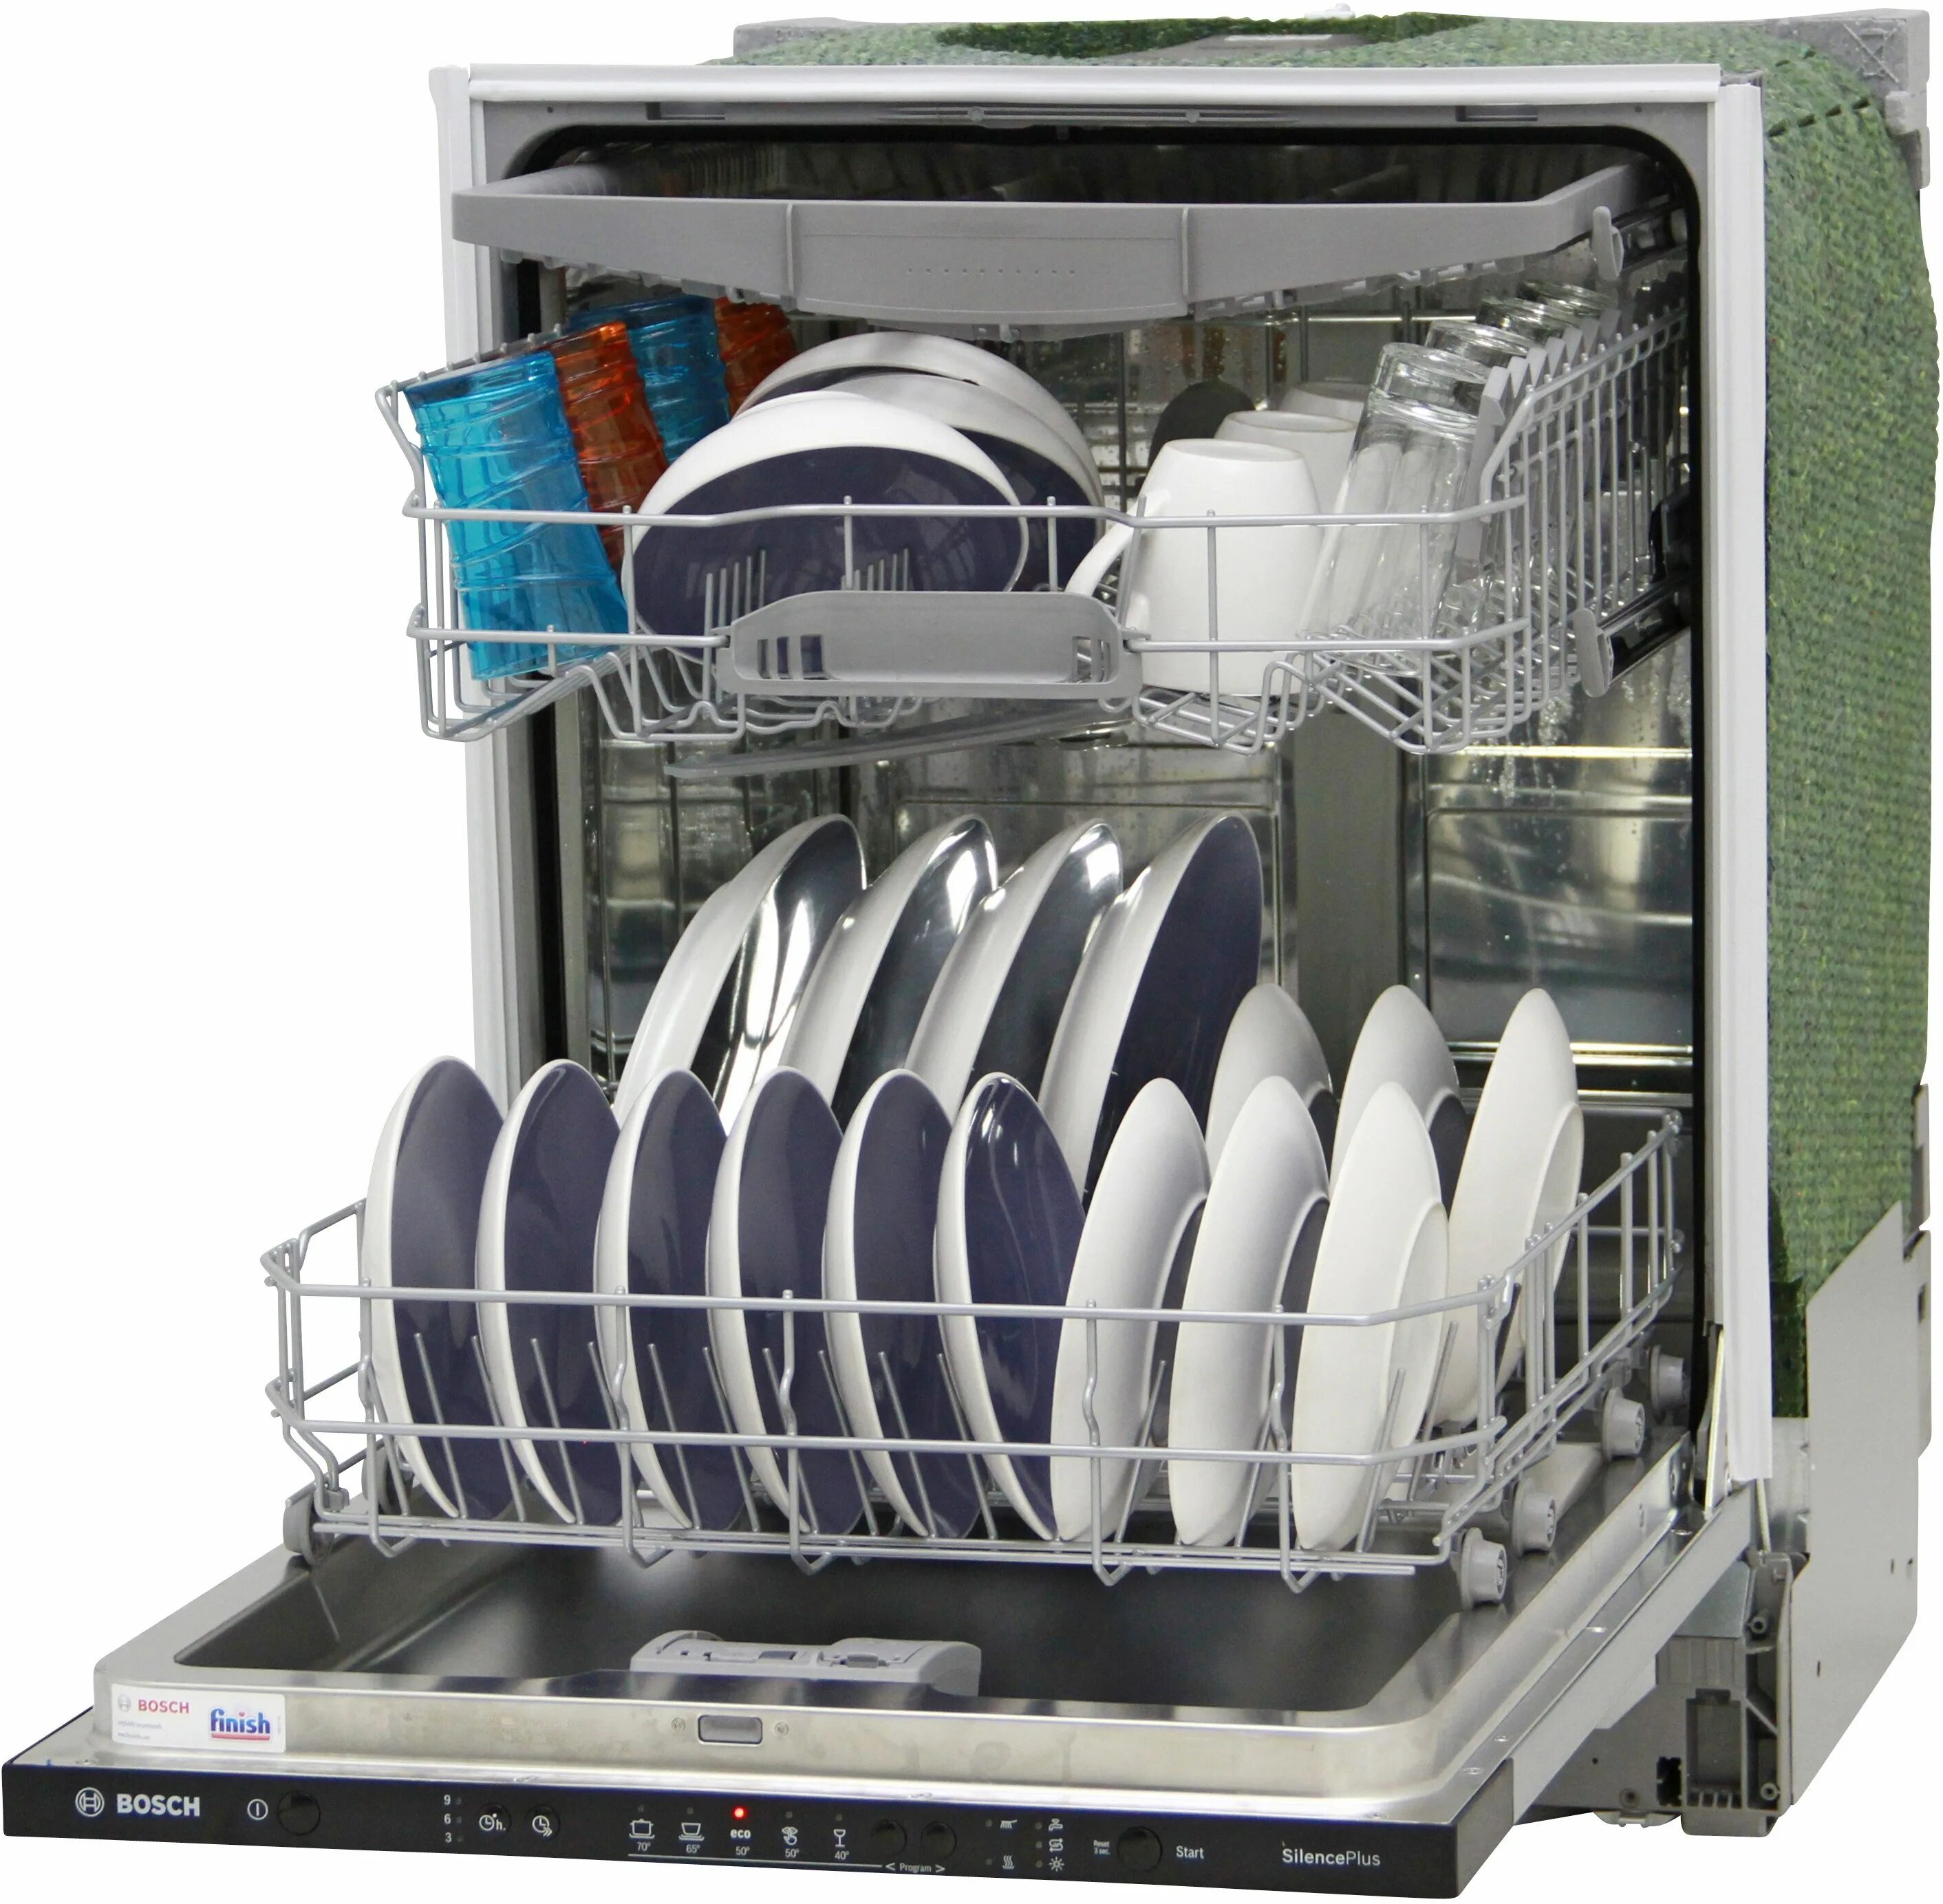 Bosch smv25ex00e. Посудомоечная машина Bosch SMV 25ex00 e. Бош smv25fx03r посудомойка. Посудомоечная машина встраиваемая Bosch smv25fx01r, 60 см.